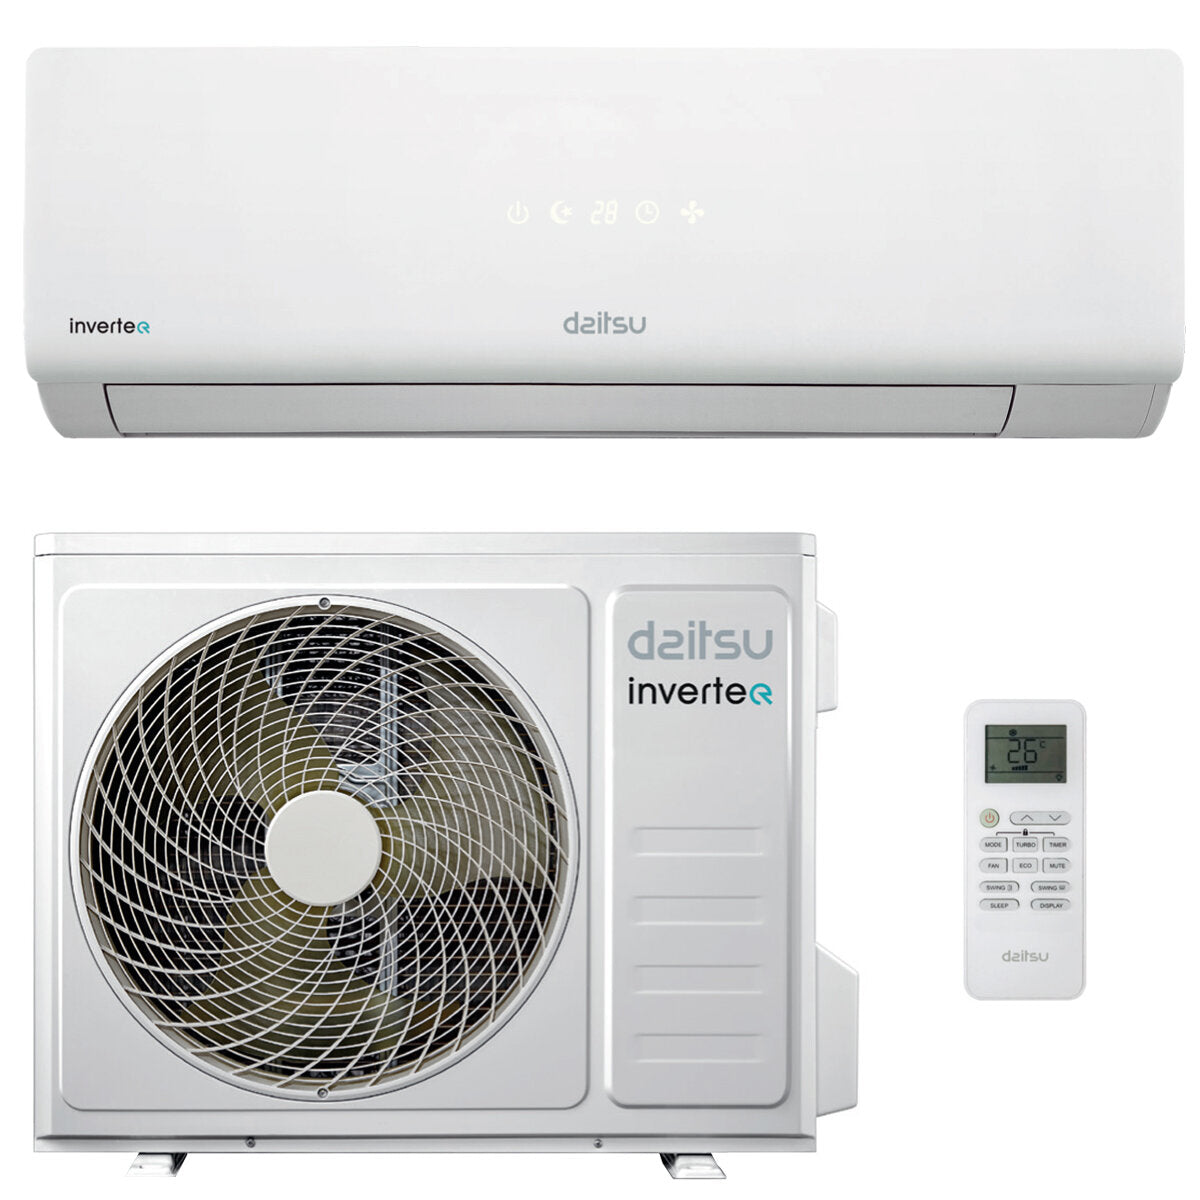 Daitsu air conditioner - Fujitsu Group - ECO DT-2 series 9000 BTU R32 inverter A ++